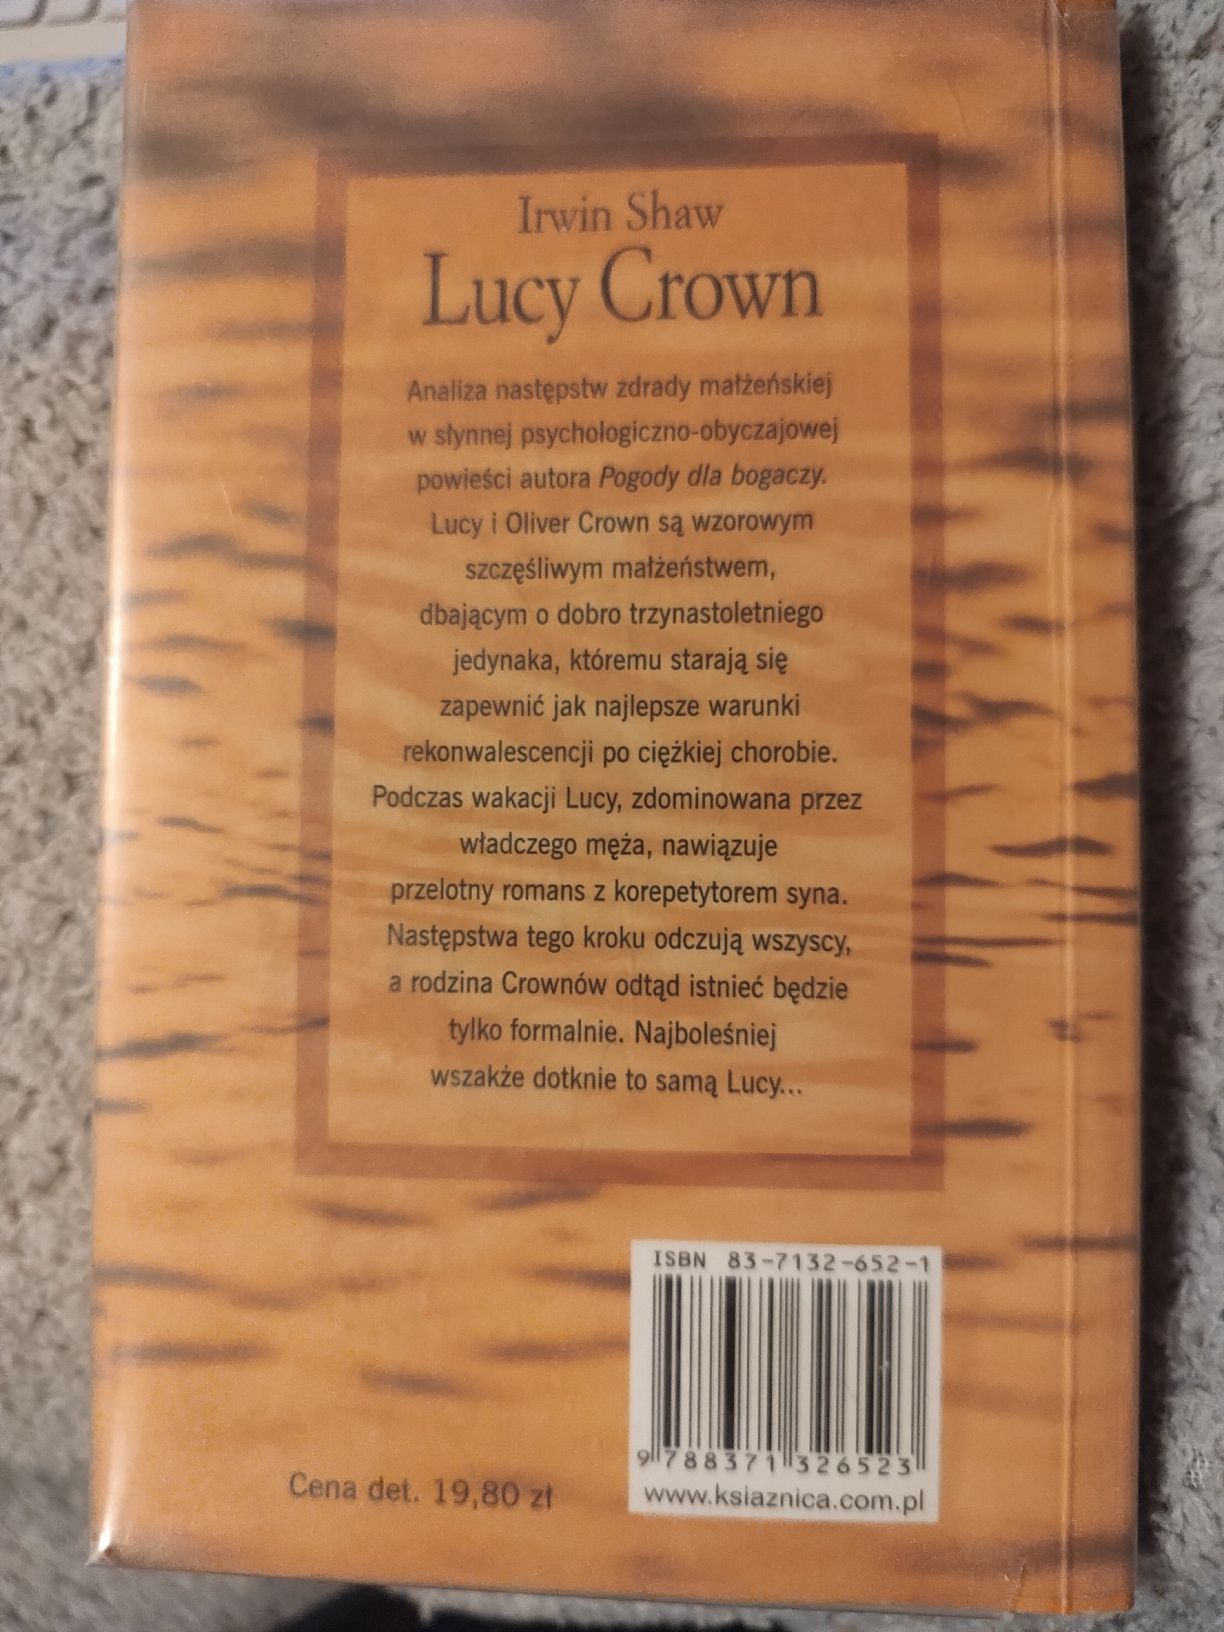 Książka Irwin Shaw "Lucy Crown"